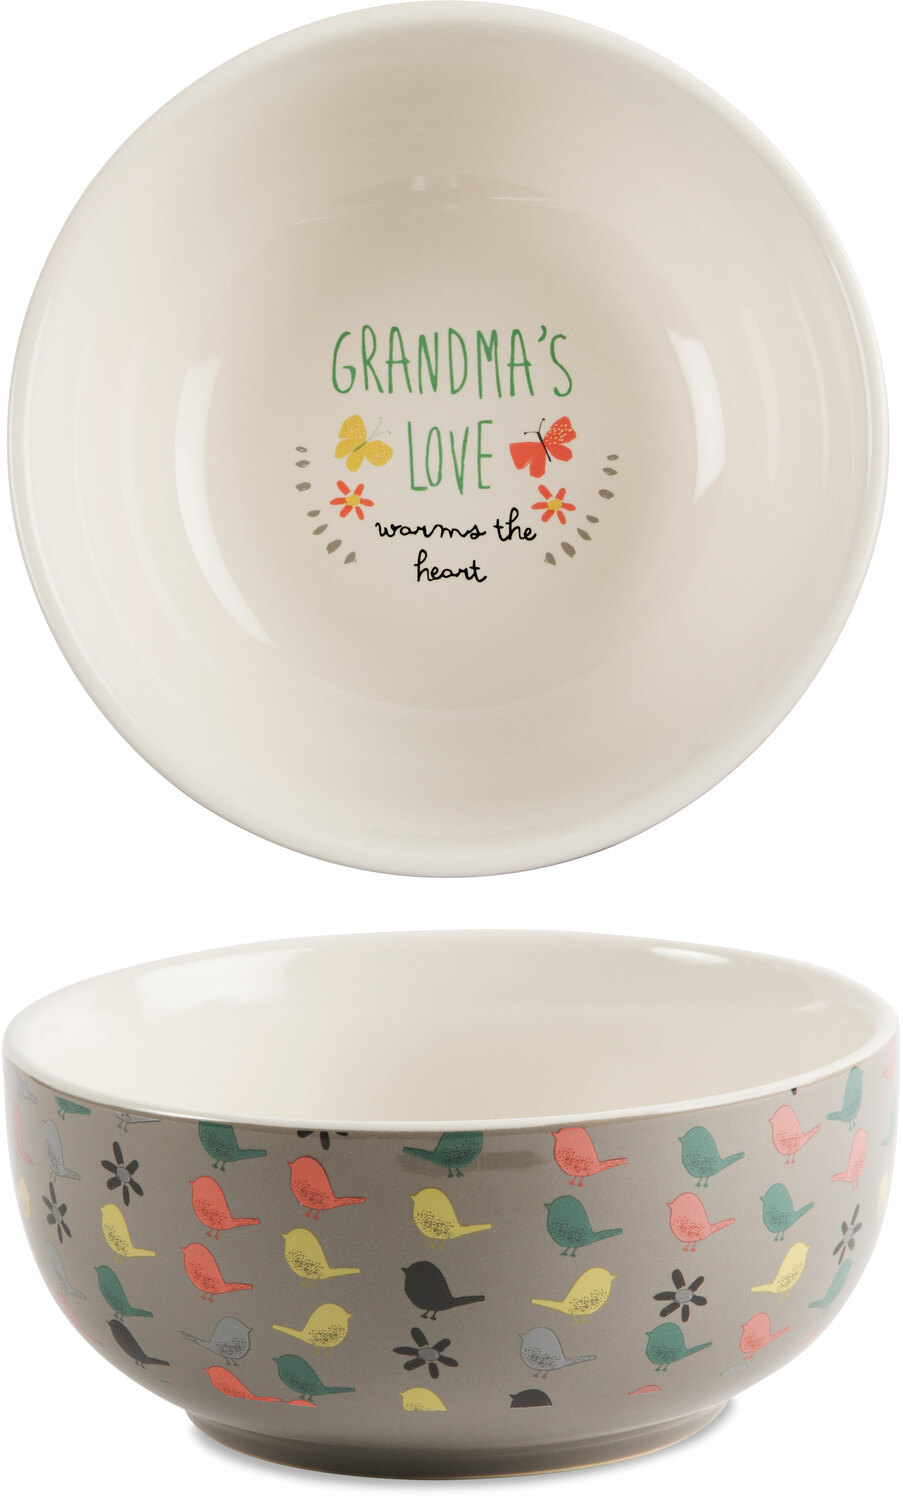 Grandma by Bloom by Amylee Weeks - Grandma - 2.75"x 6" Ceramic Bowl